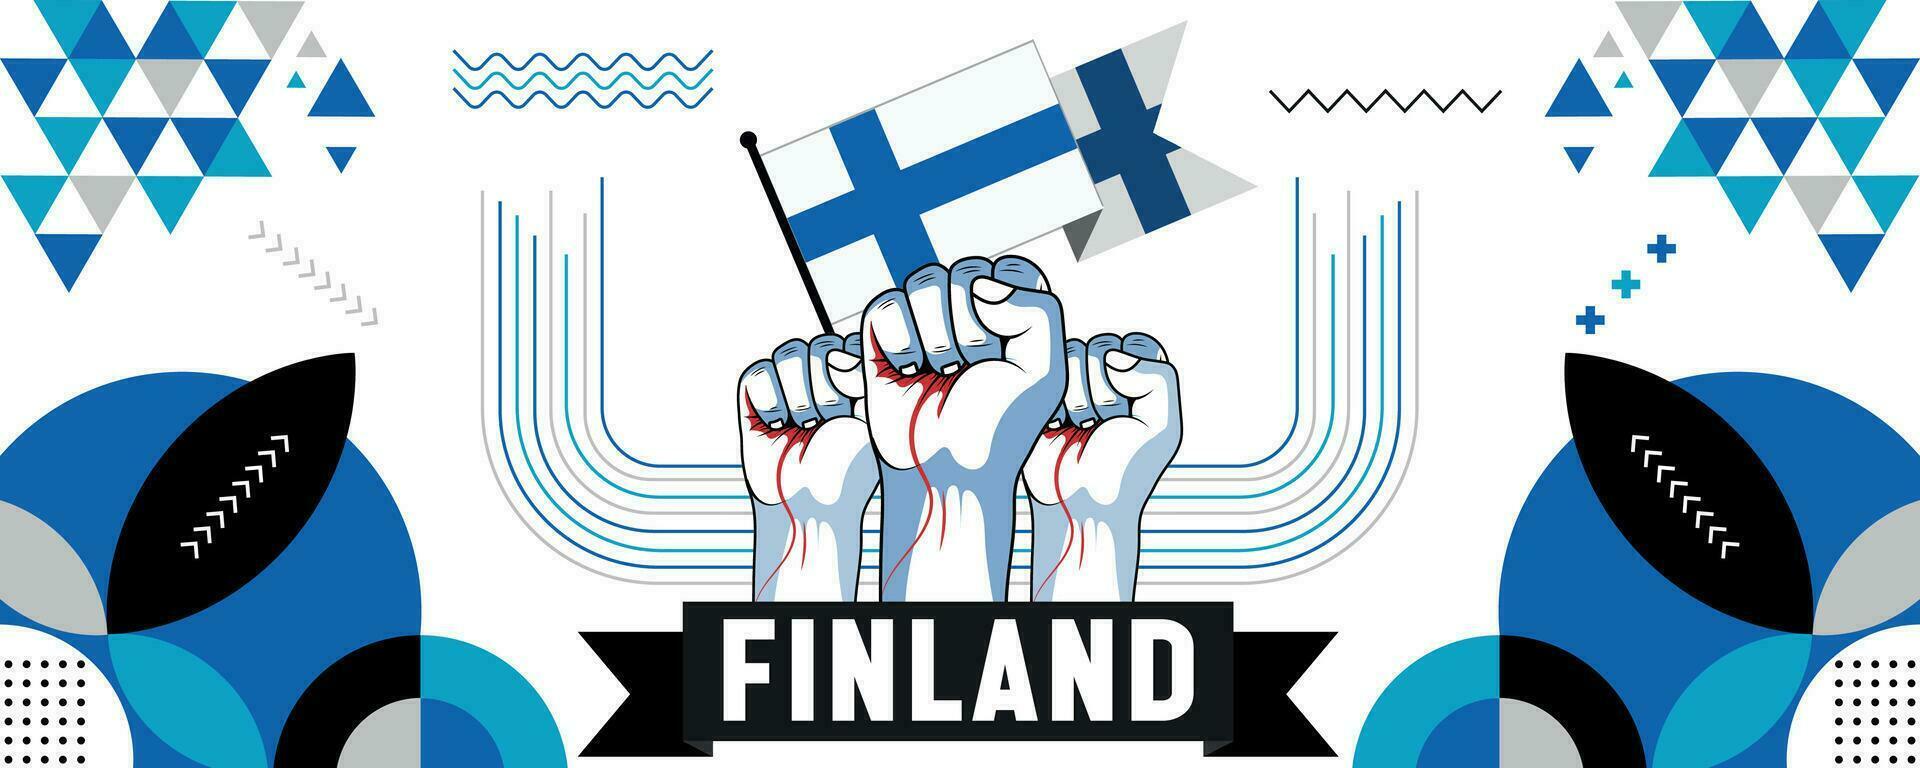 Finland nationaal of onafhankelijkheid dag banier ontwerp voor land viering. vlag en kaart van Finland met verheven vuisten. modern retro ontwerp met abstract meetkundig pictogrammen. vector illustratie.